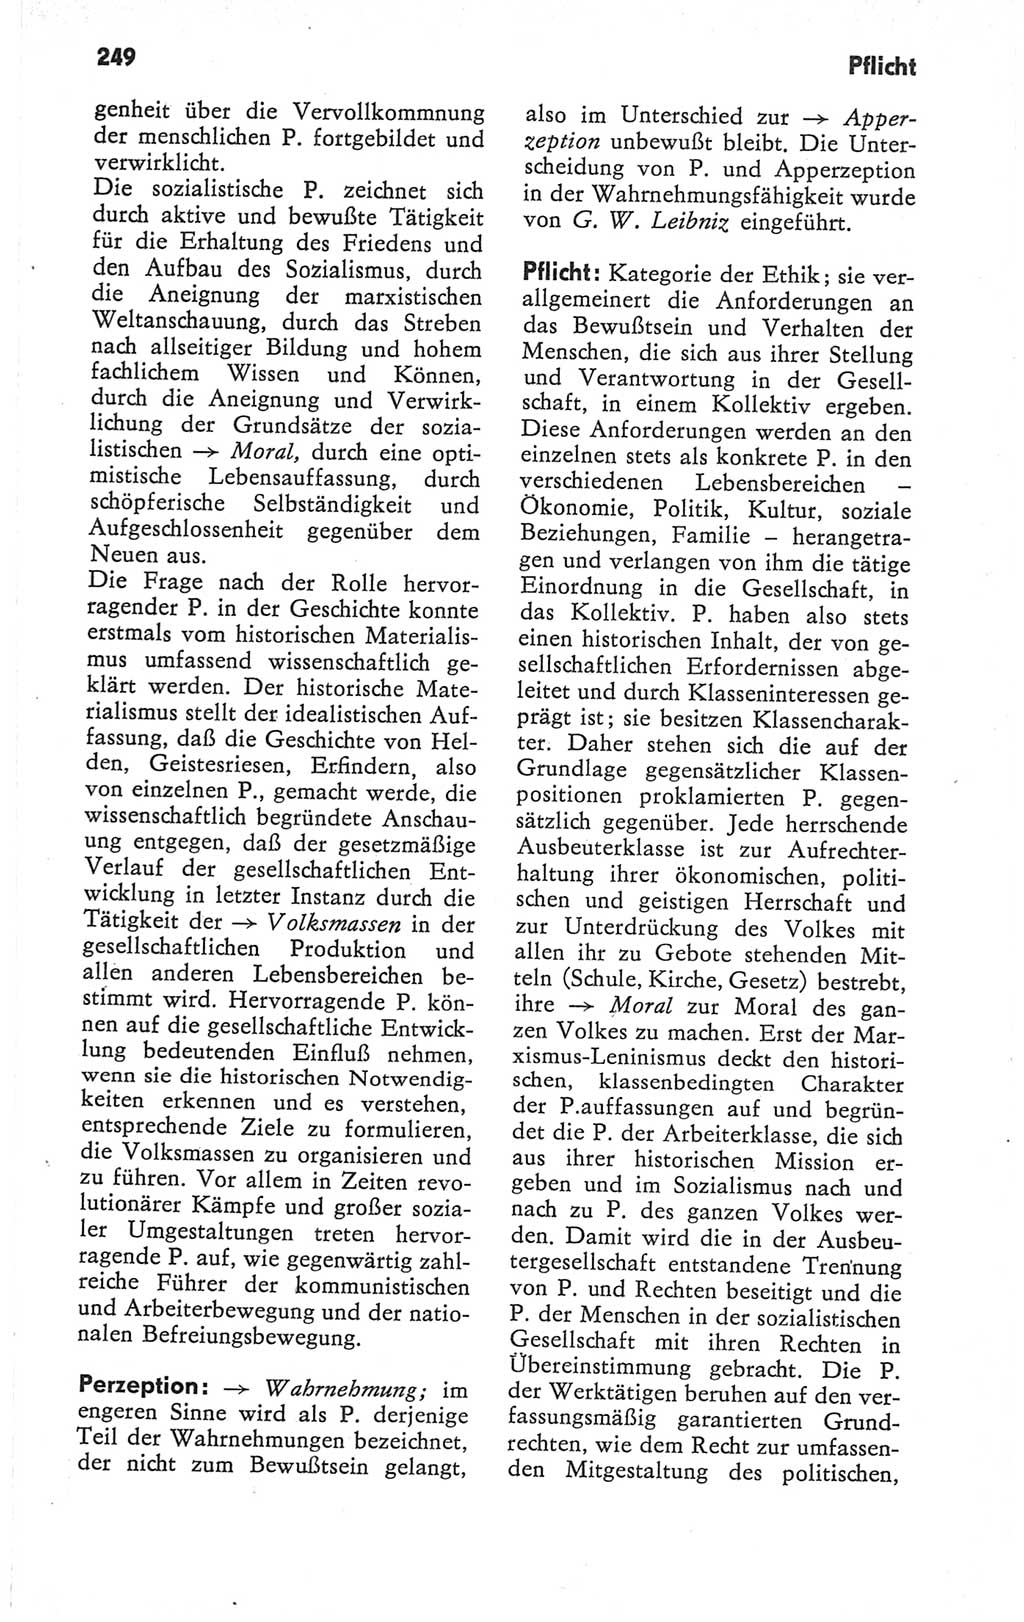 Kleines Wörterbuch der marxistisch-leninistischen Philosophie [Deutsche Demokratische Republik (DDR)] 1979, Seite 249 (Kl. Wb. ML Phil. DDR 1979, S. 249)